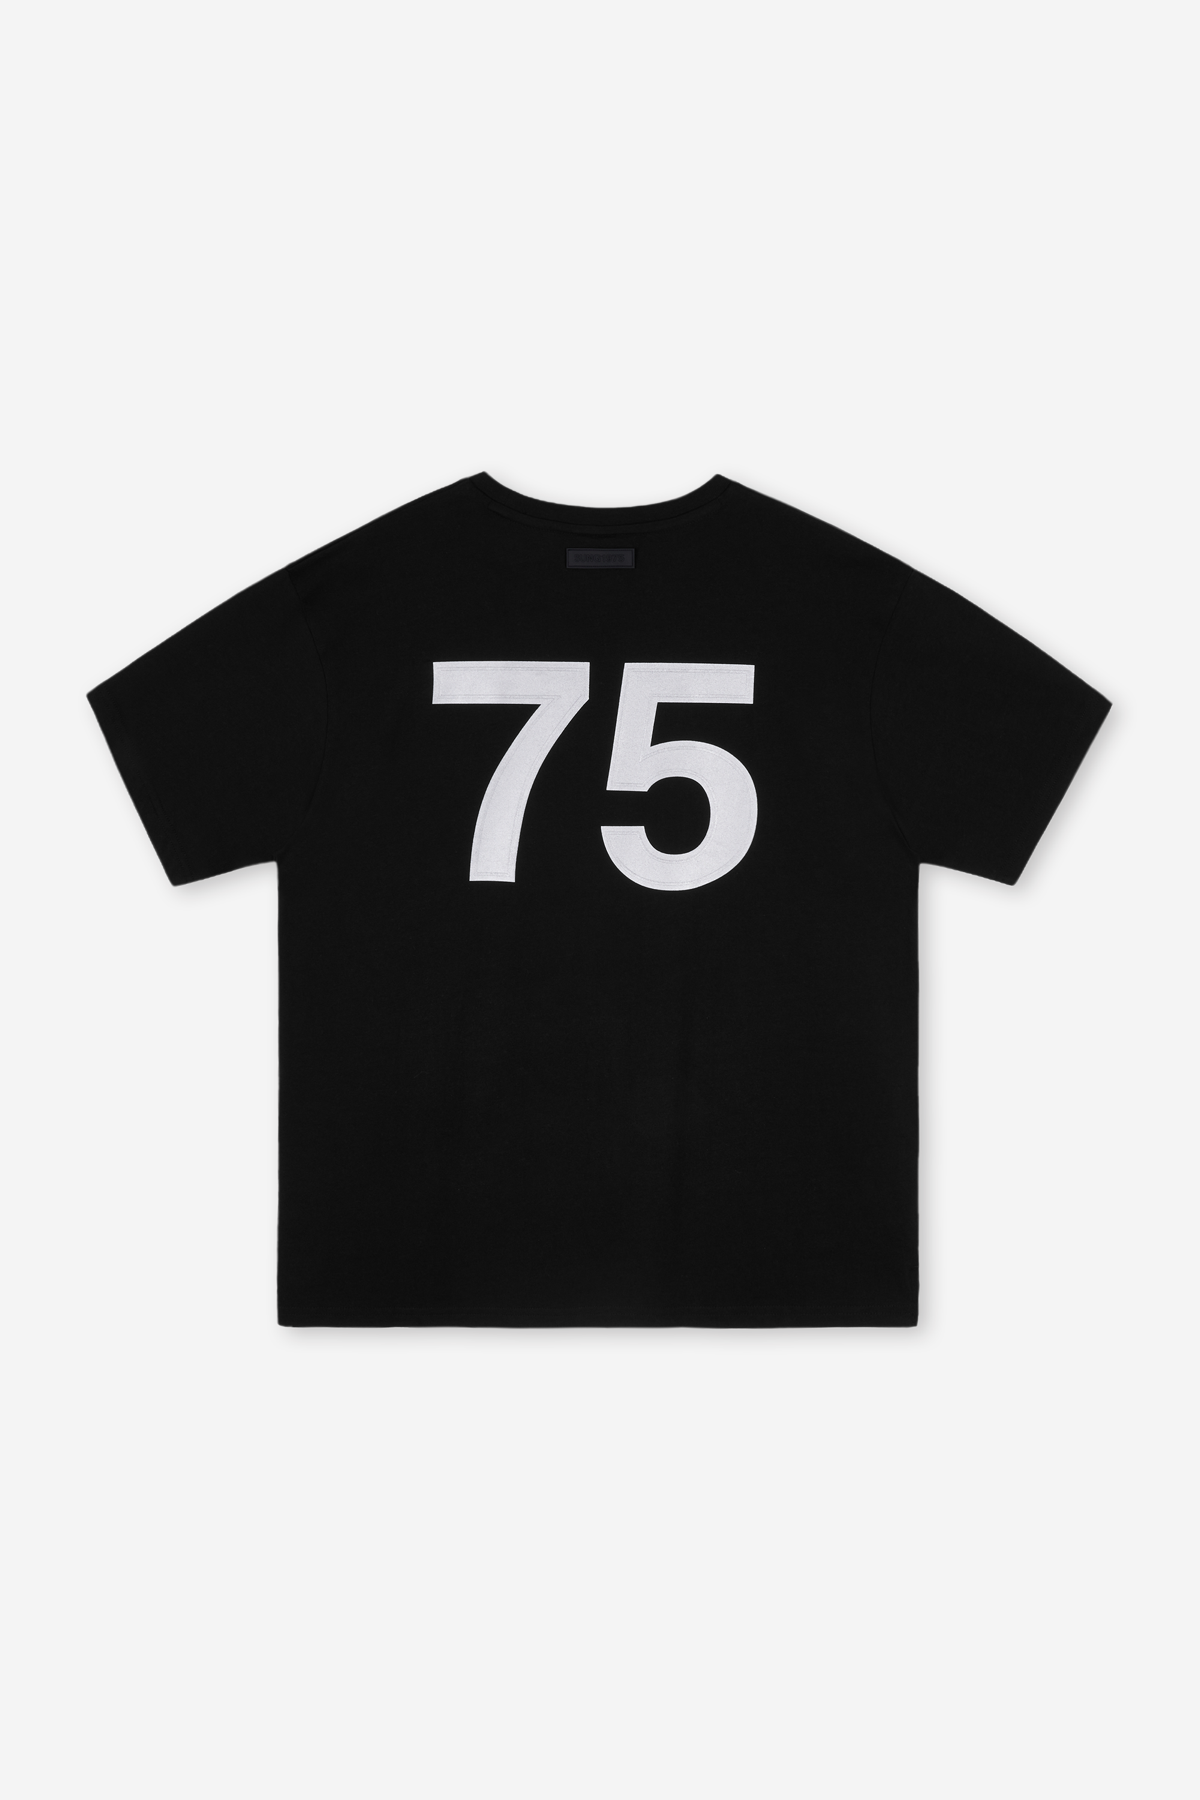 75 로고 티셔츠(SUNG-TS-07)